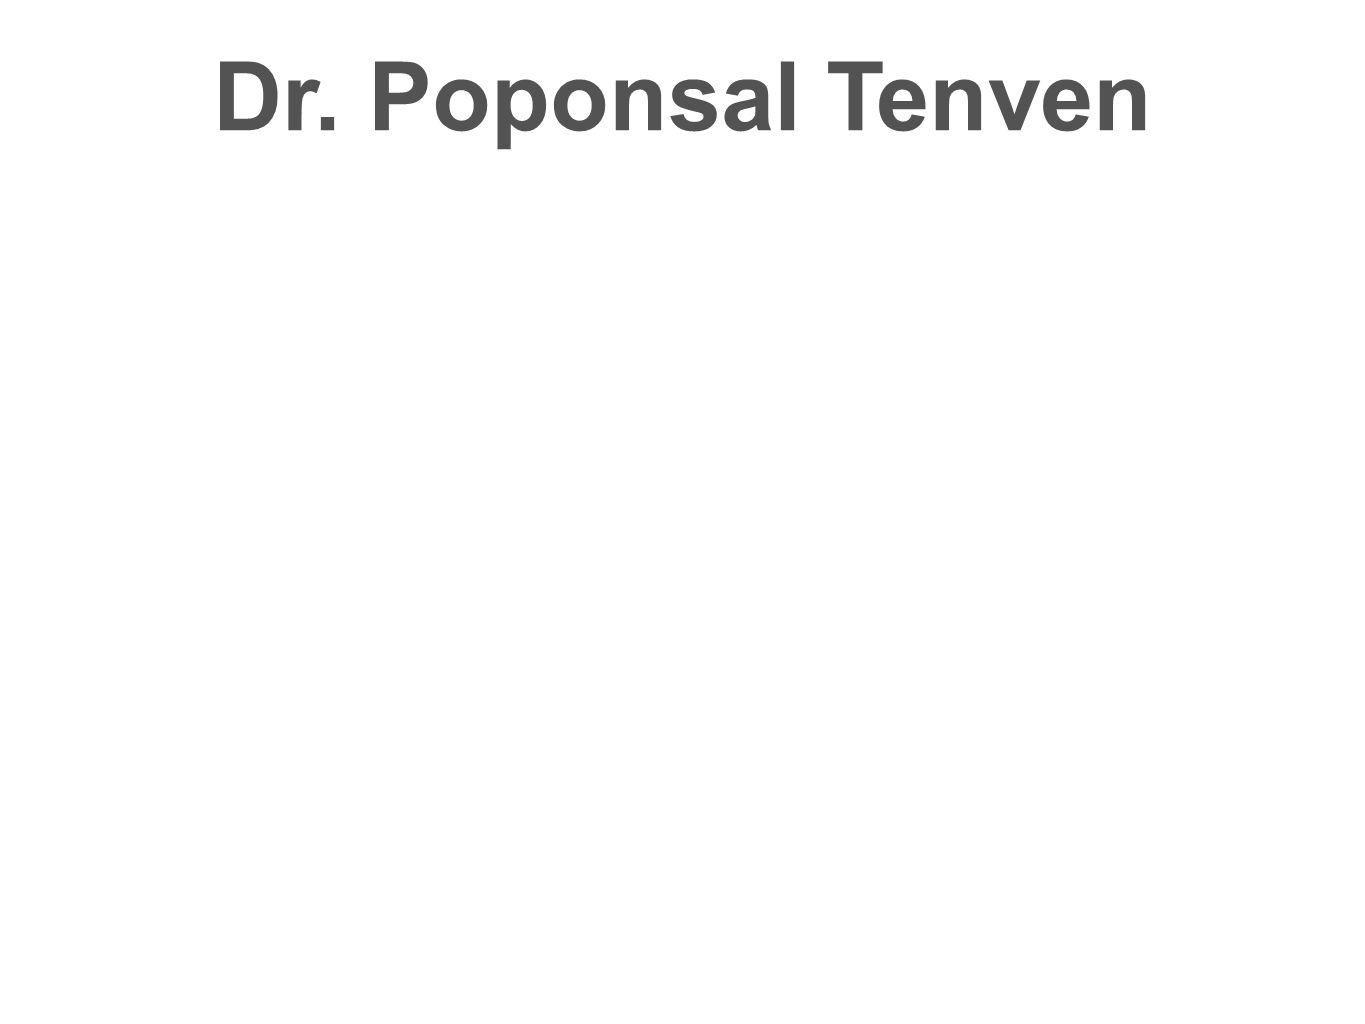 Dr. Poponsal Tenven